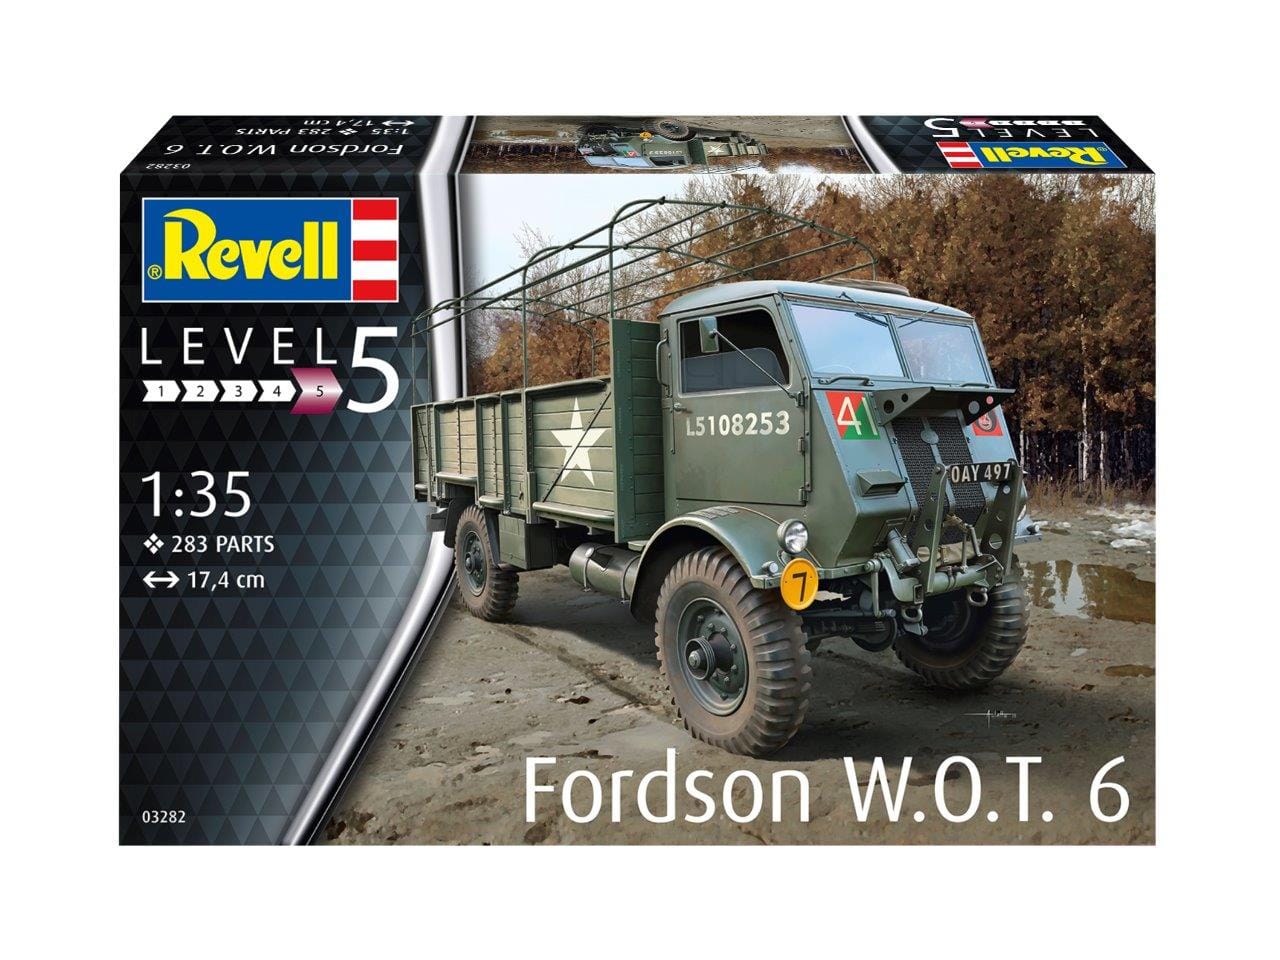 RVG3282 FORDSON W.O.T. 6 (1/35)